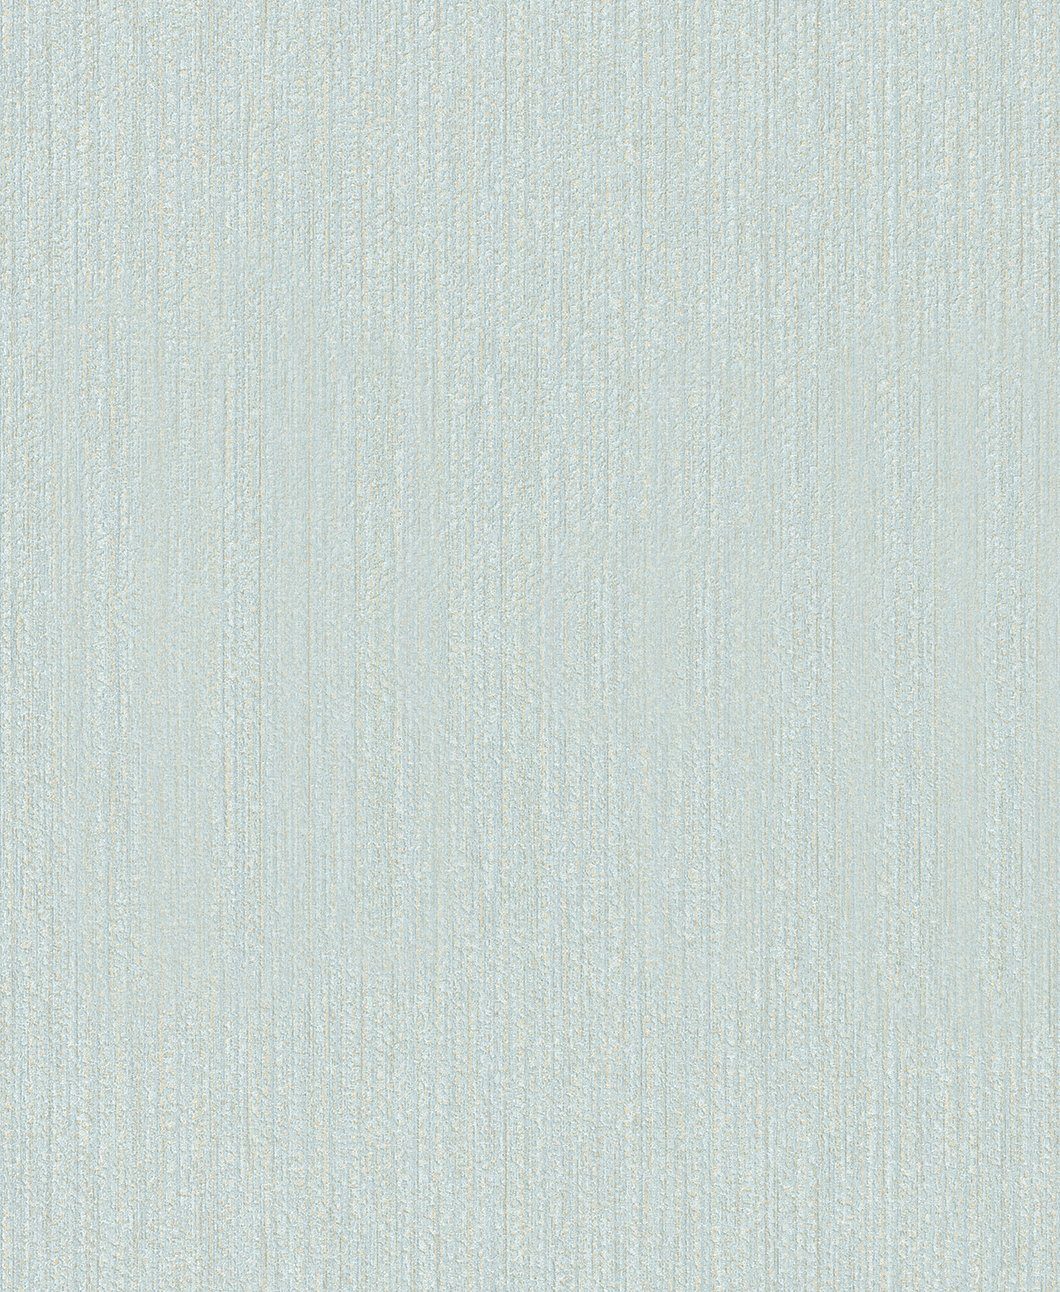 0,53 10,05 Vliestapete, SCHÖNER WOHNEN-Kollektion realistisch, hellblau x Meter